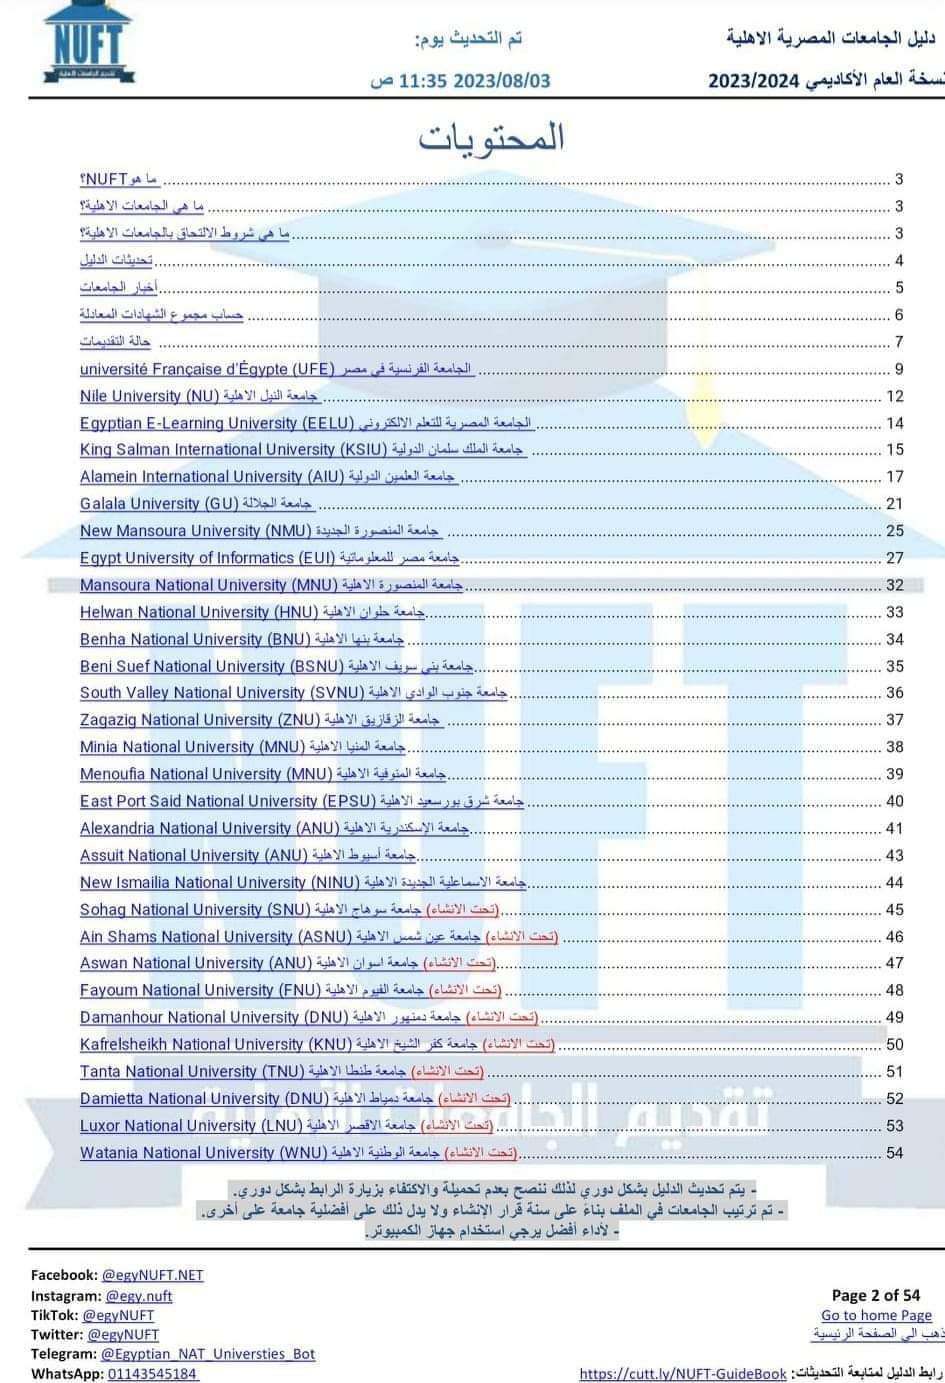 تحميل دليل الجامعات الاهلية المصرية